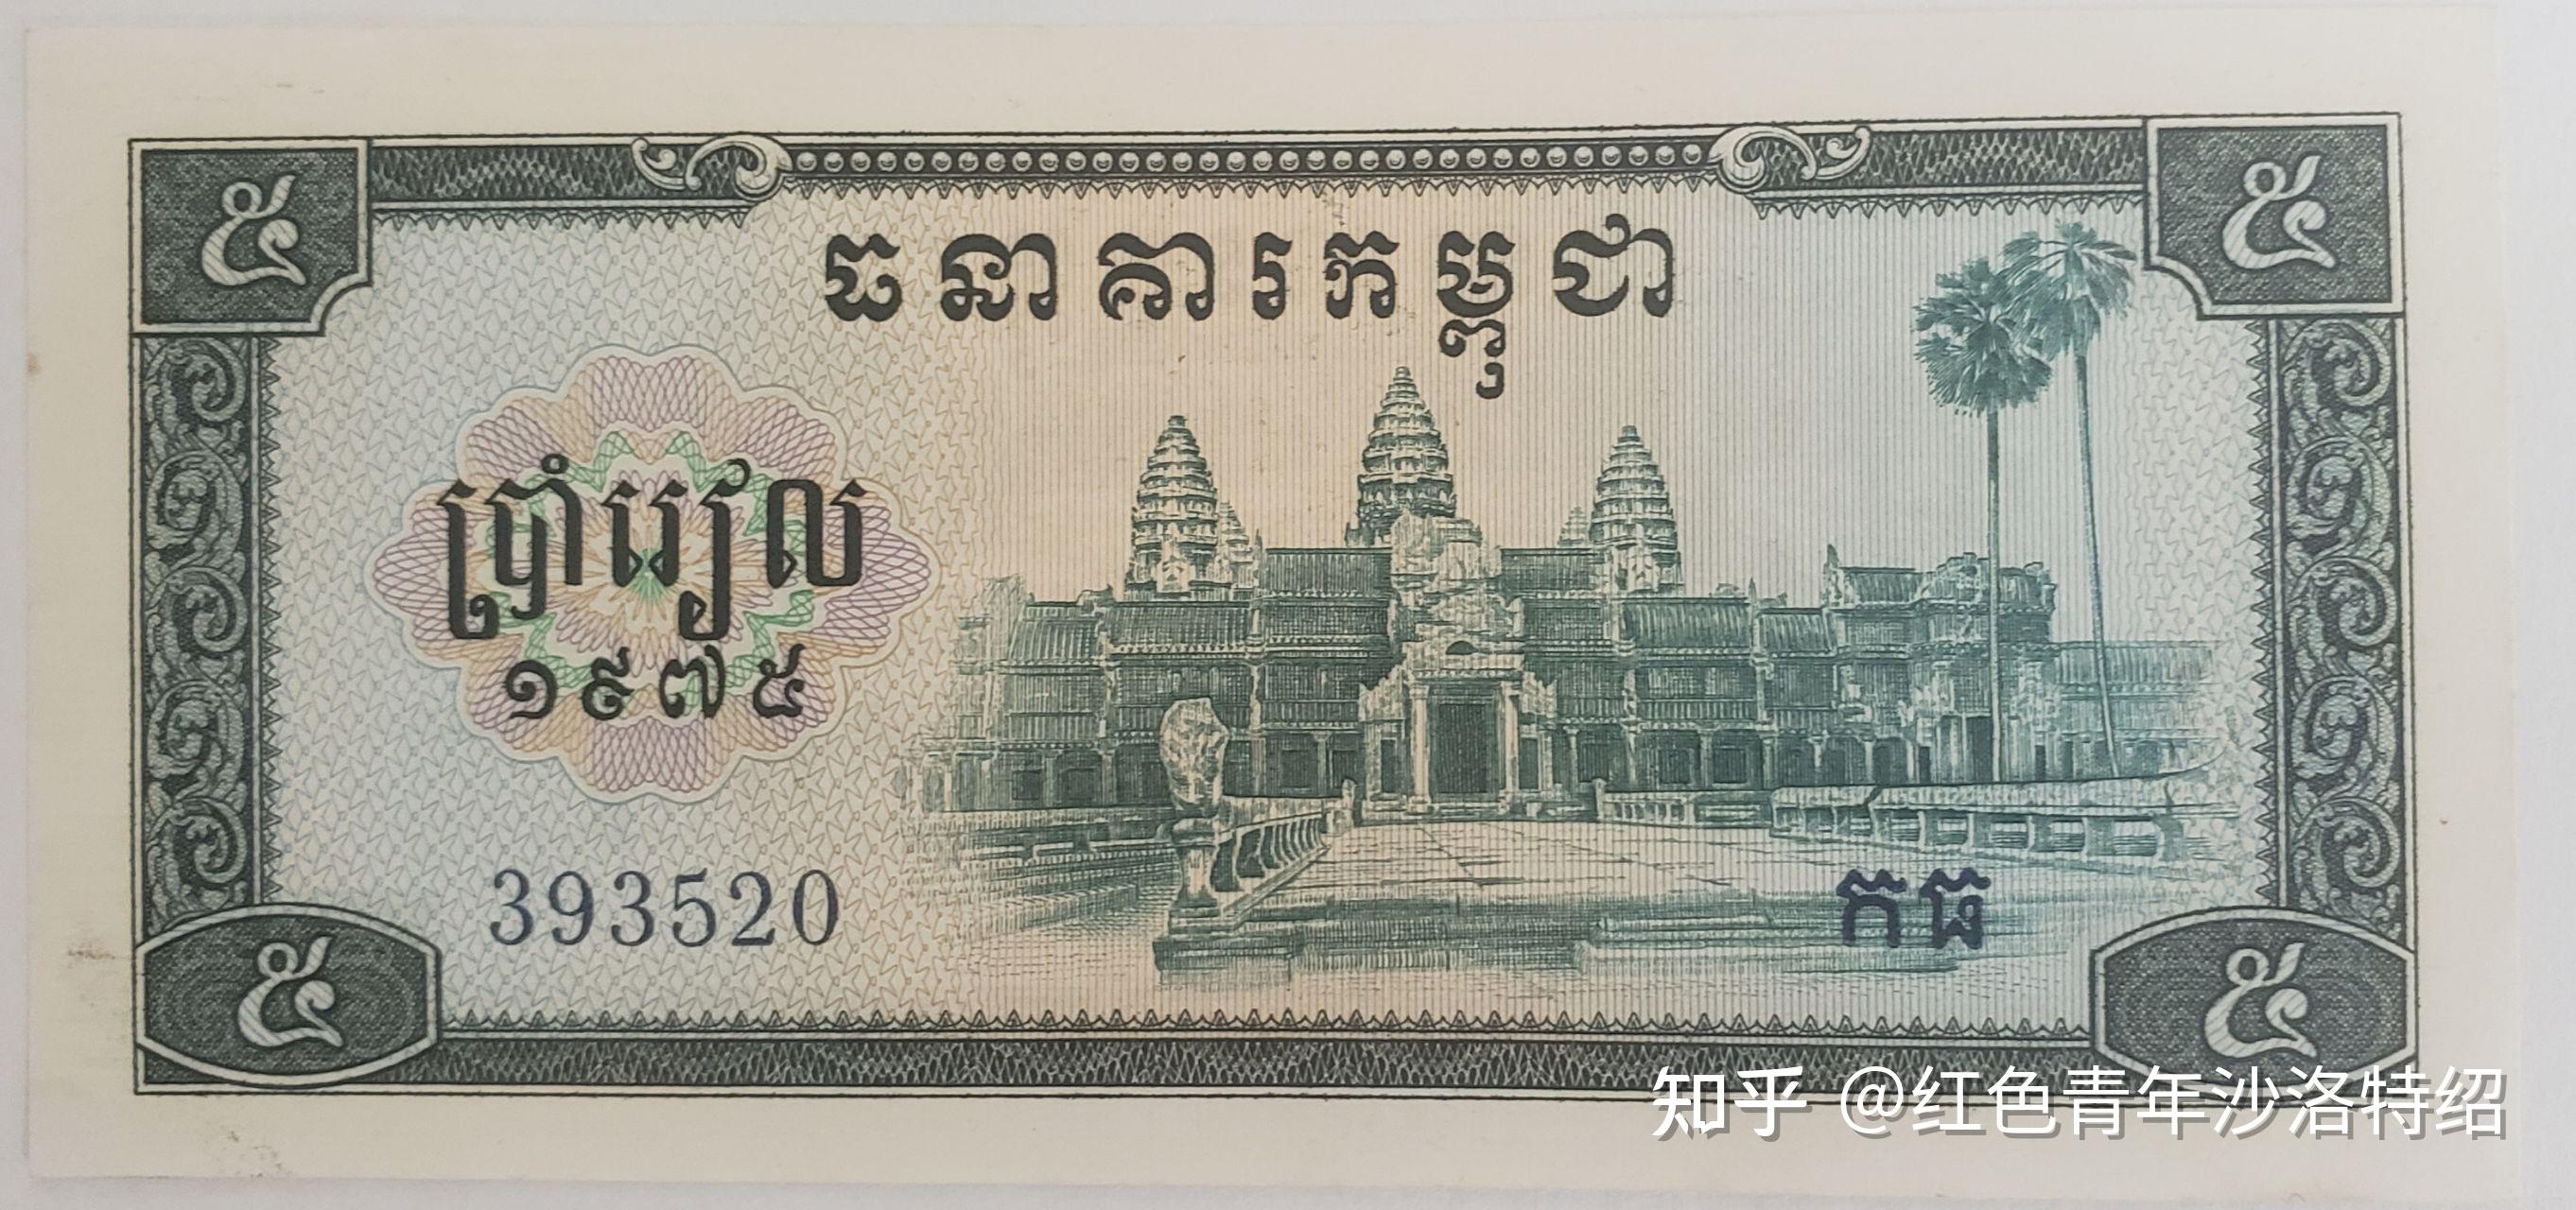 高棉的微笑：巴戎寺巡礼中篇